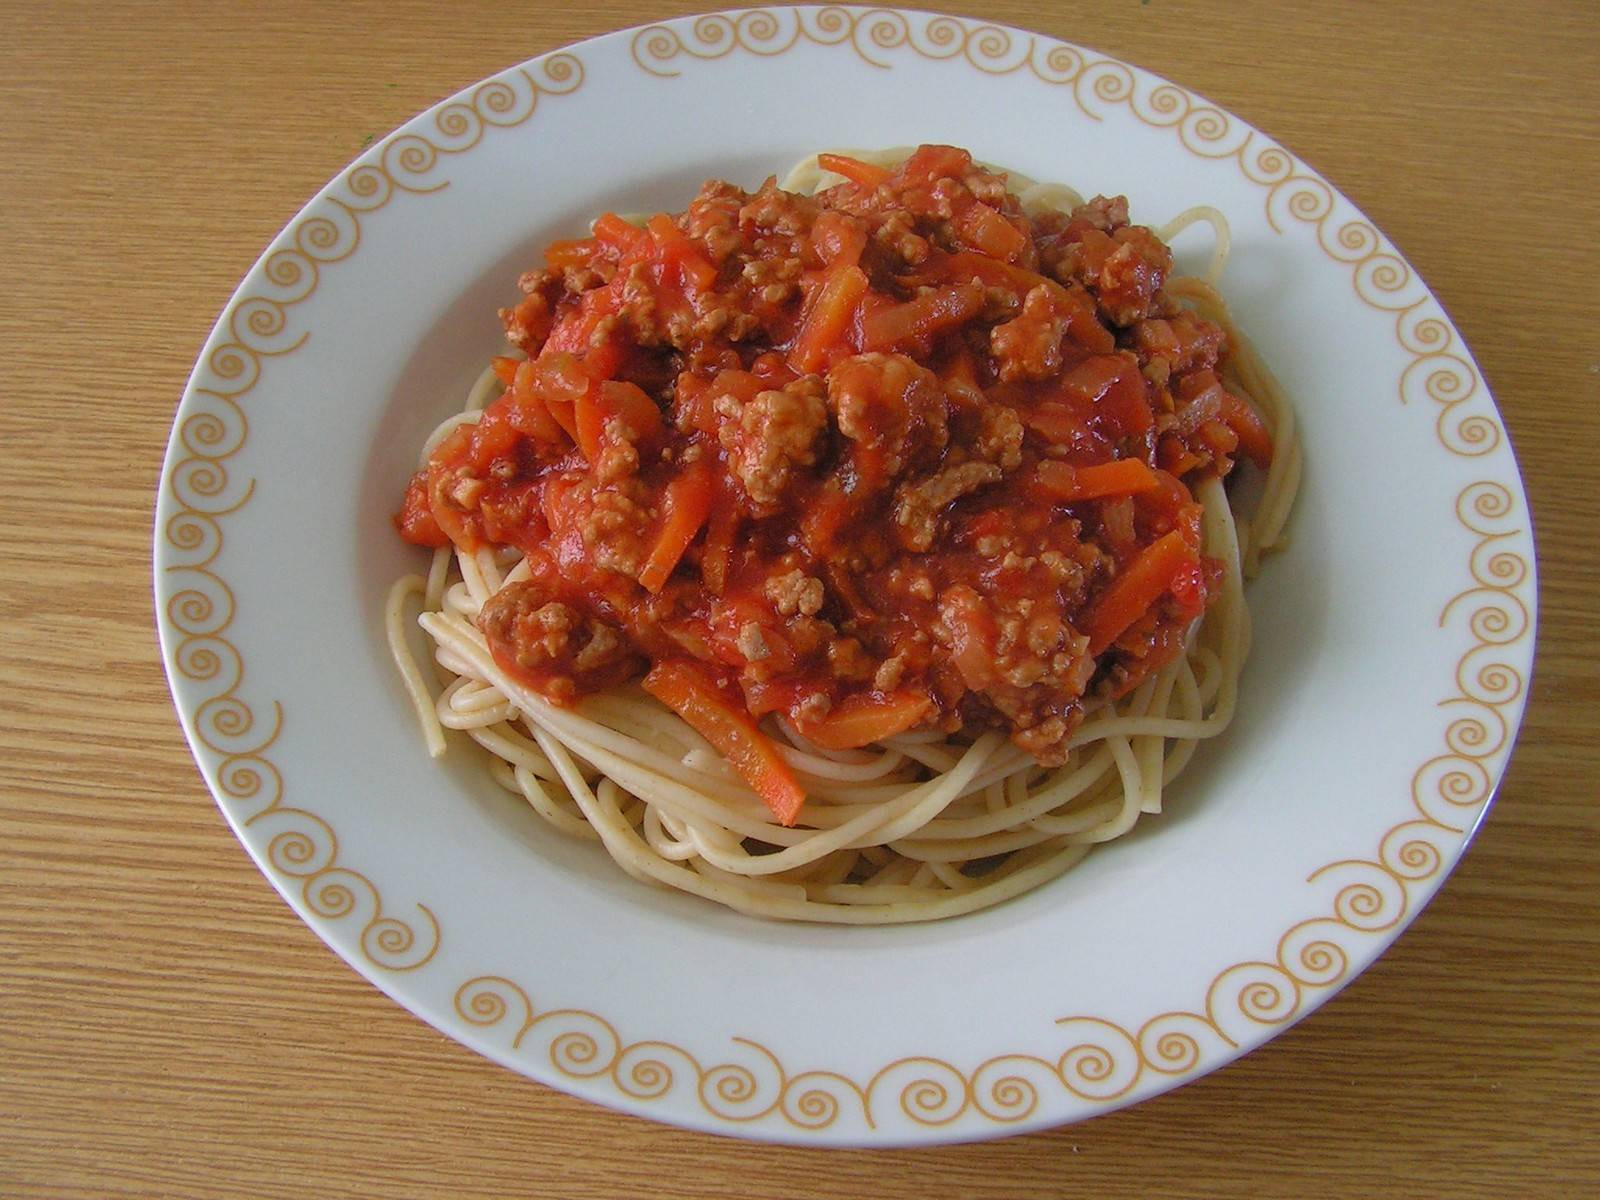 Spaghetti mit Fleisch und Karotten